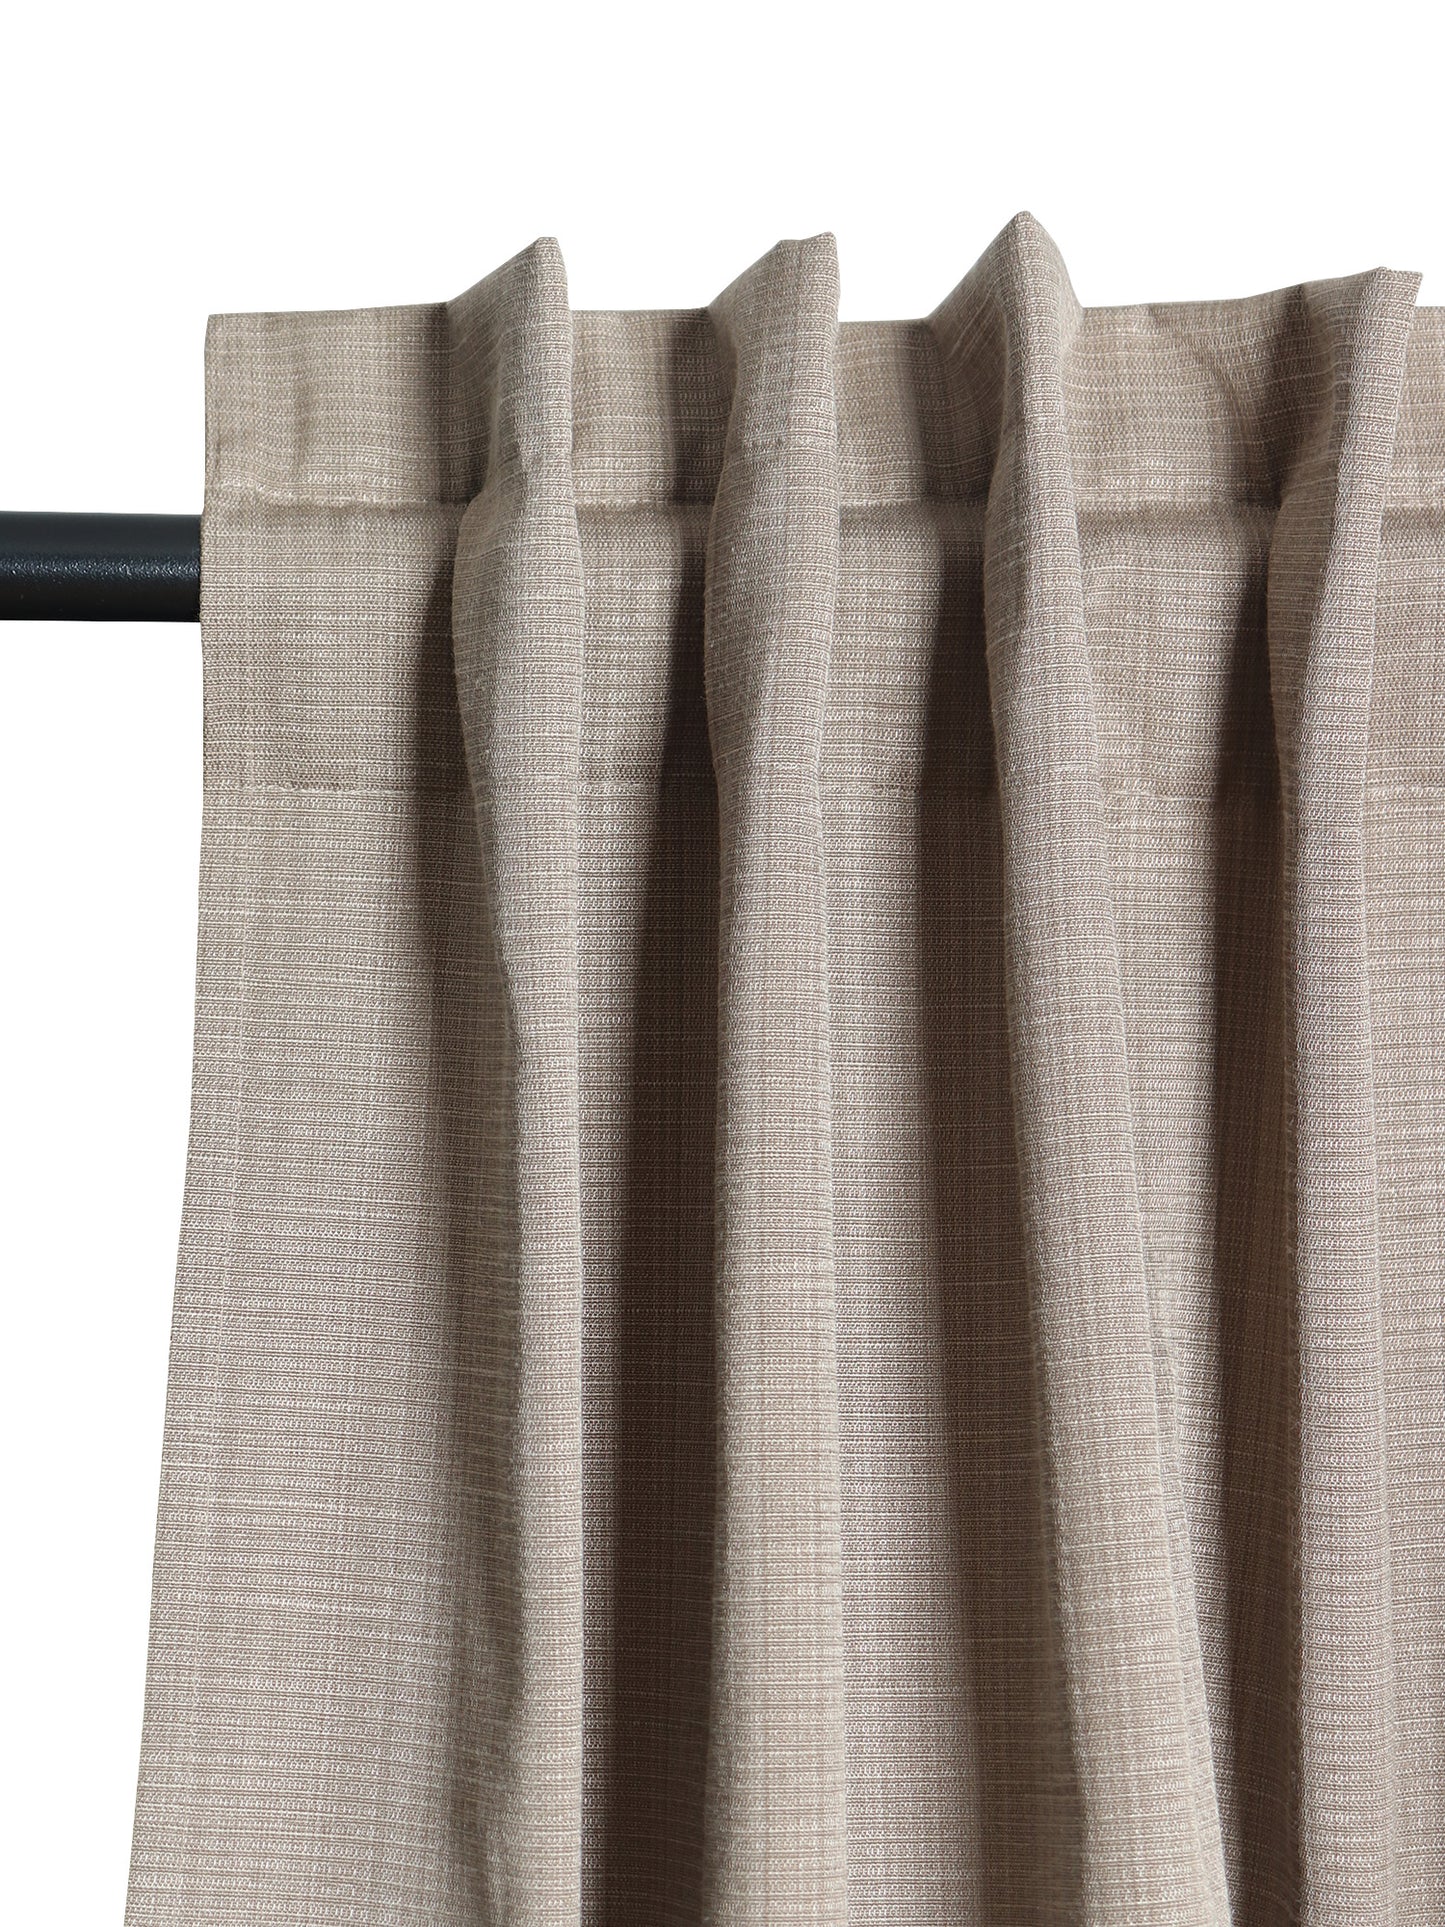 Door Curtain Cotton Blend Solid Brown - 52" X 84" (Hidden Loop) (7 ft)